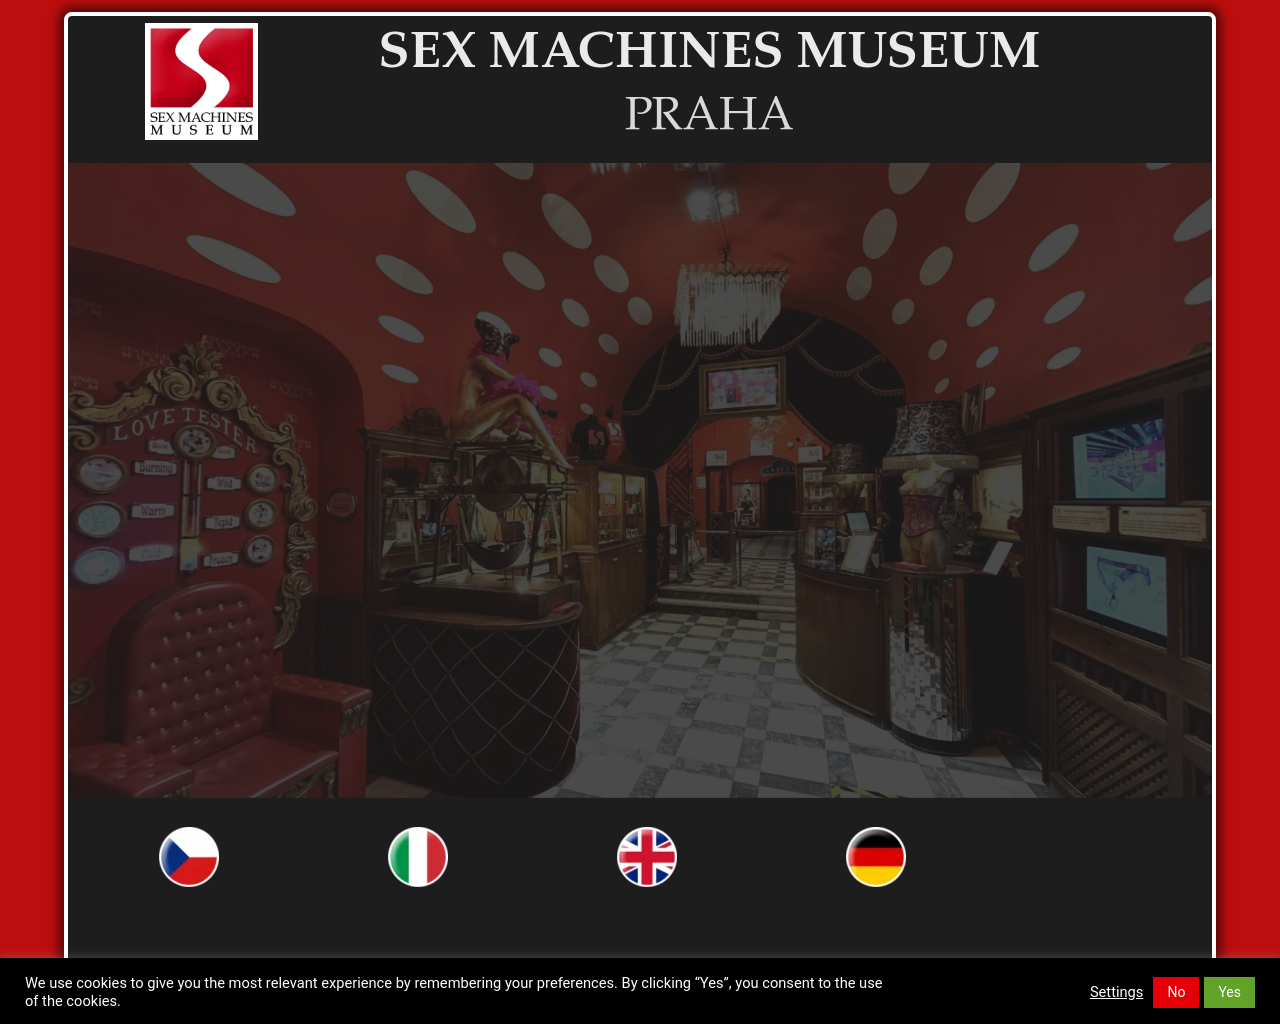 sexmachinesmuseum.com